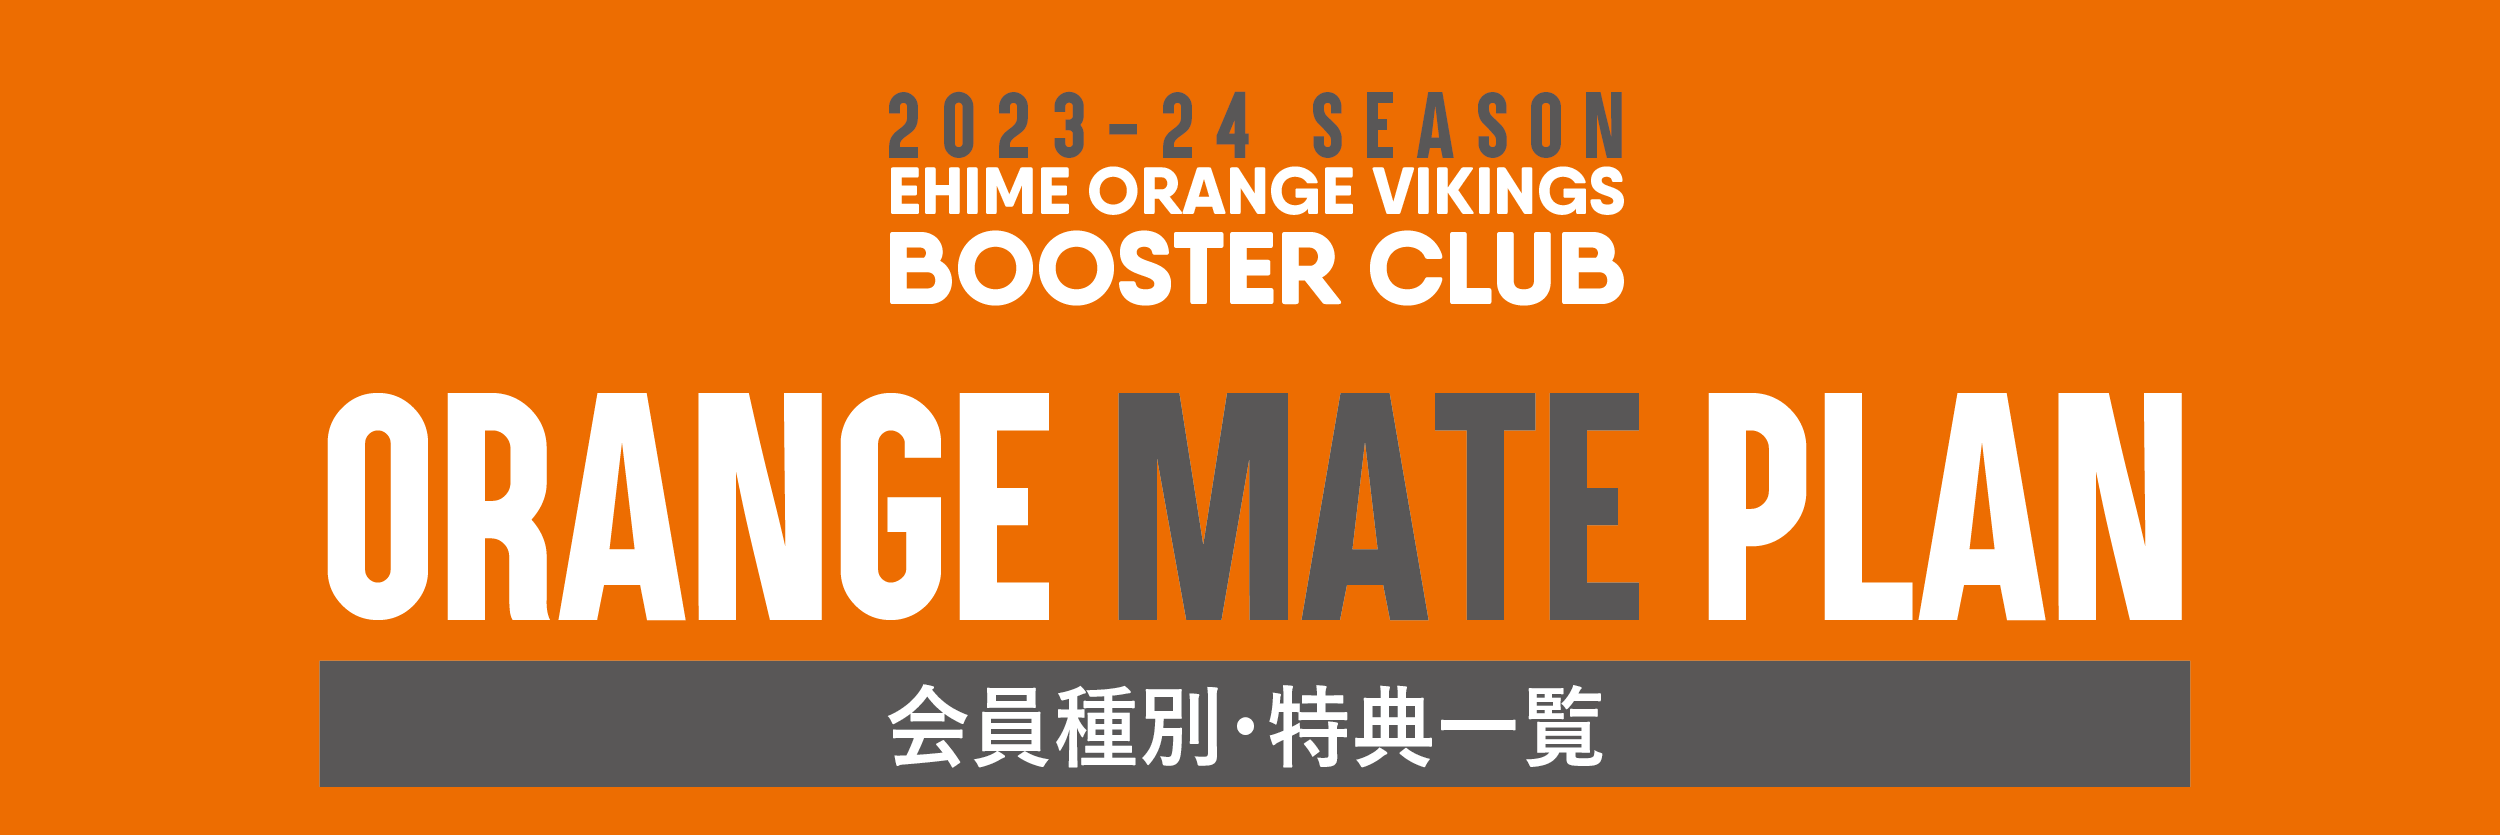 2023-24シーズン ブースタークラブ「オレンジメイト」 | 愛媛オレンジ